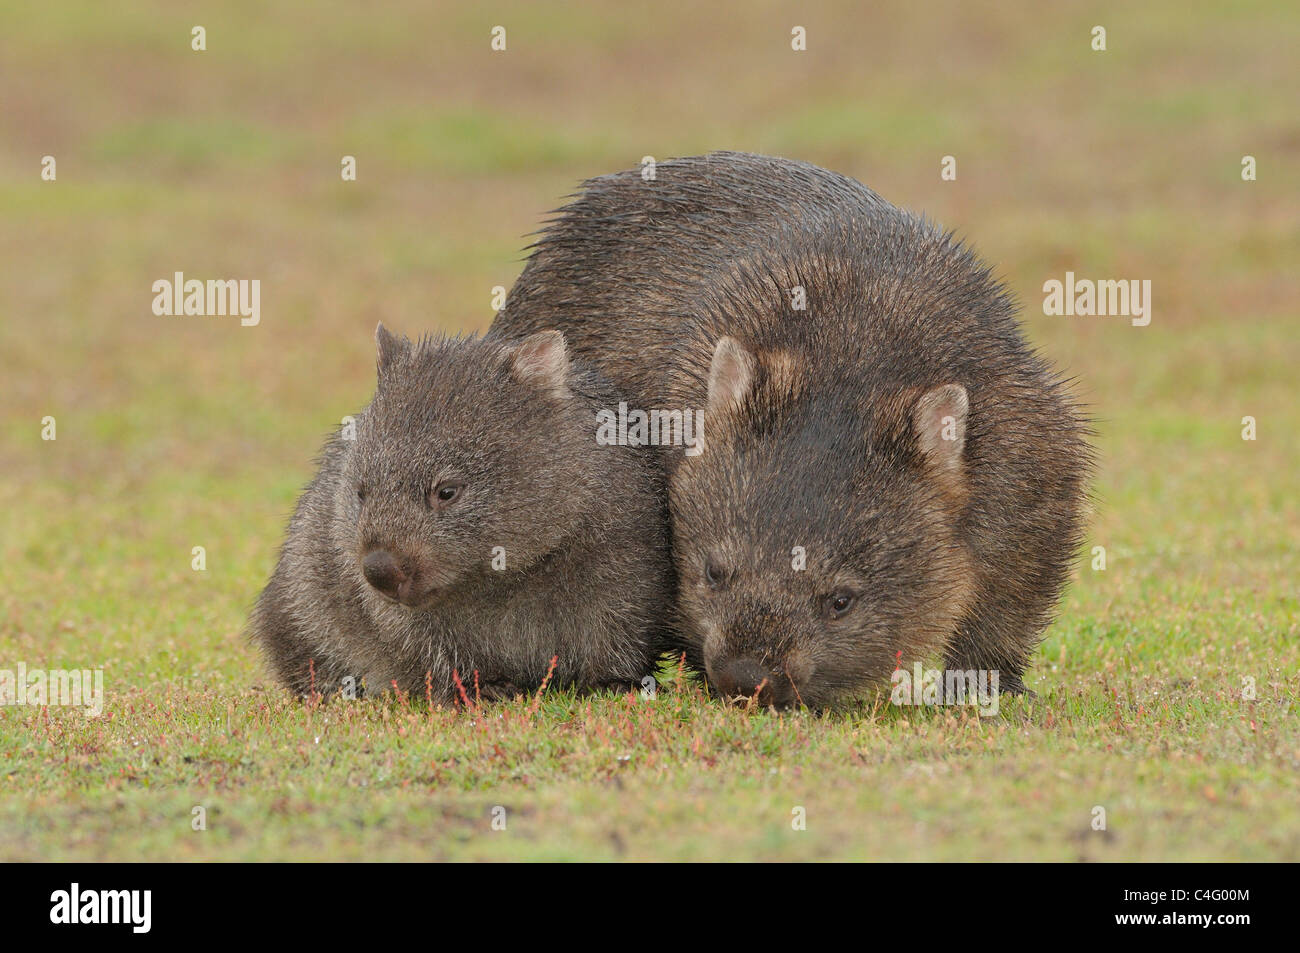 Wombat commun Vombatus ursinus la mère et l'enfant photographié en Tasmanie, Australie Banque D'Images